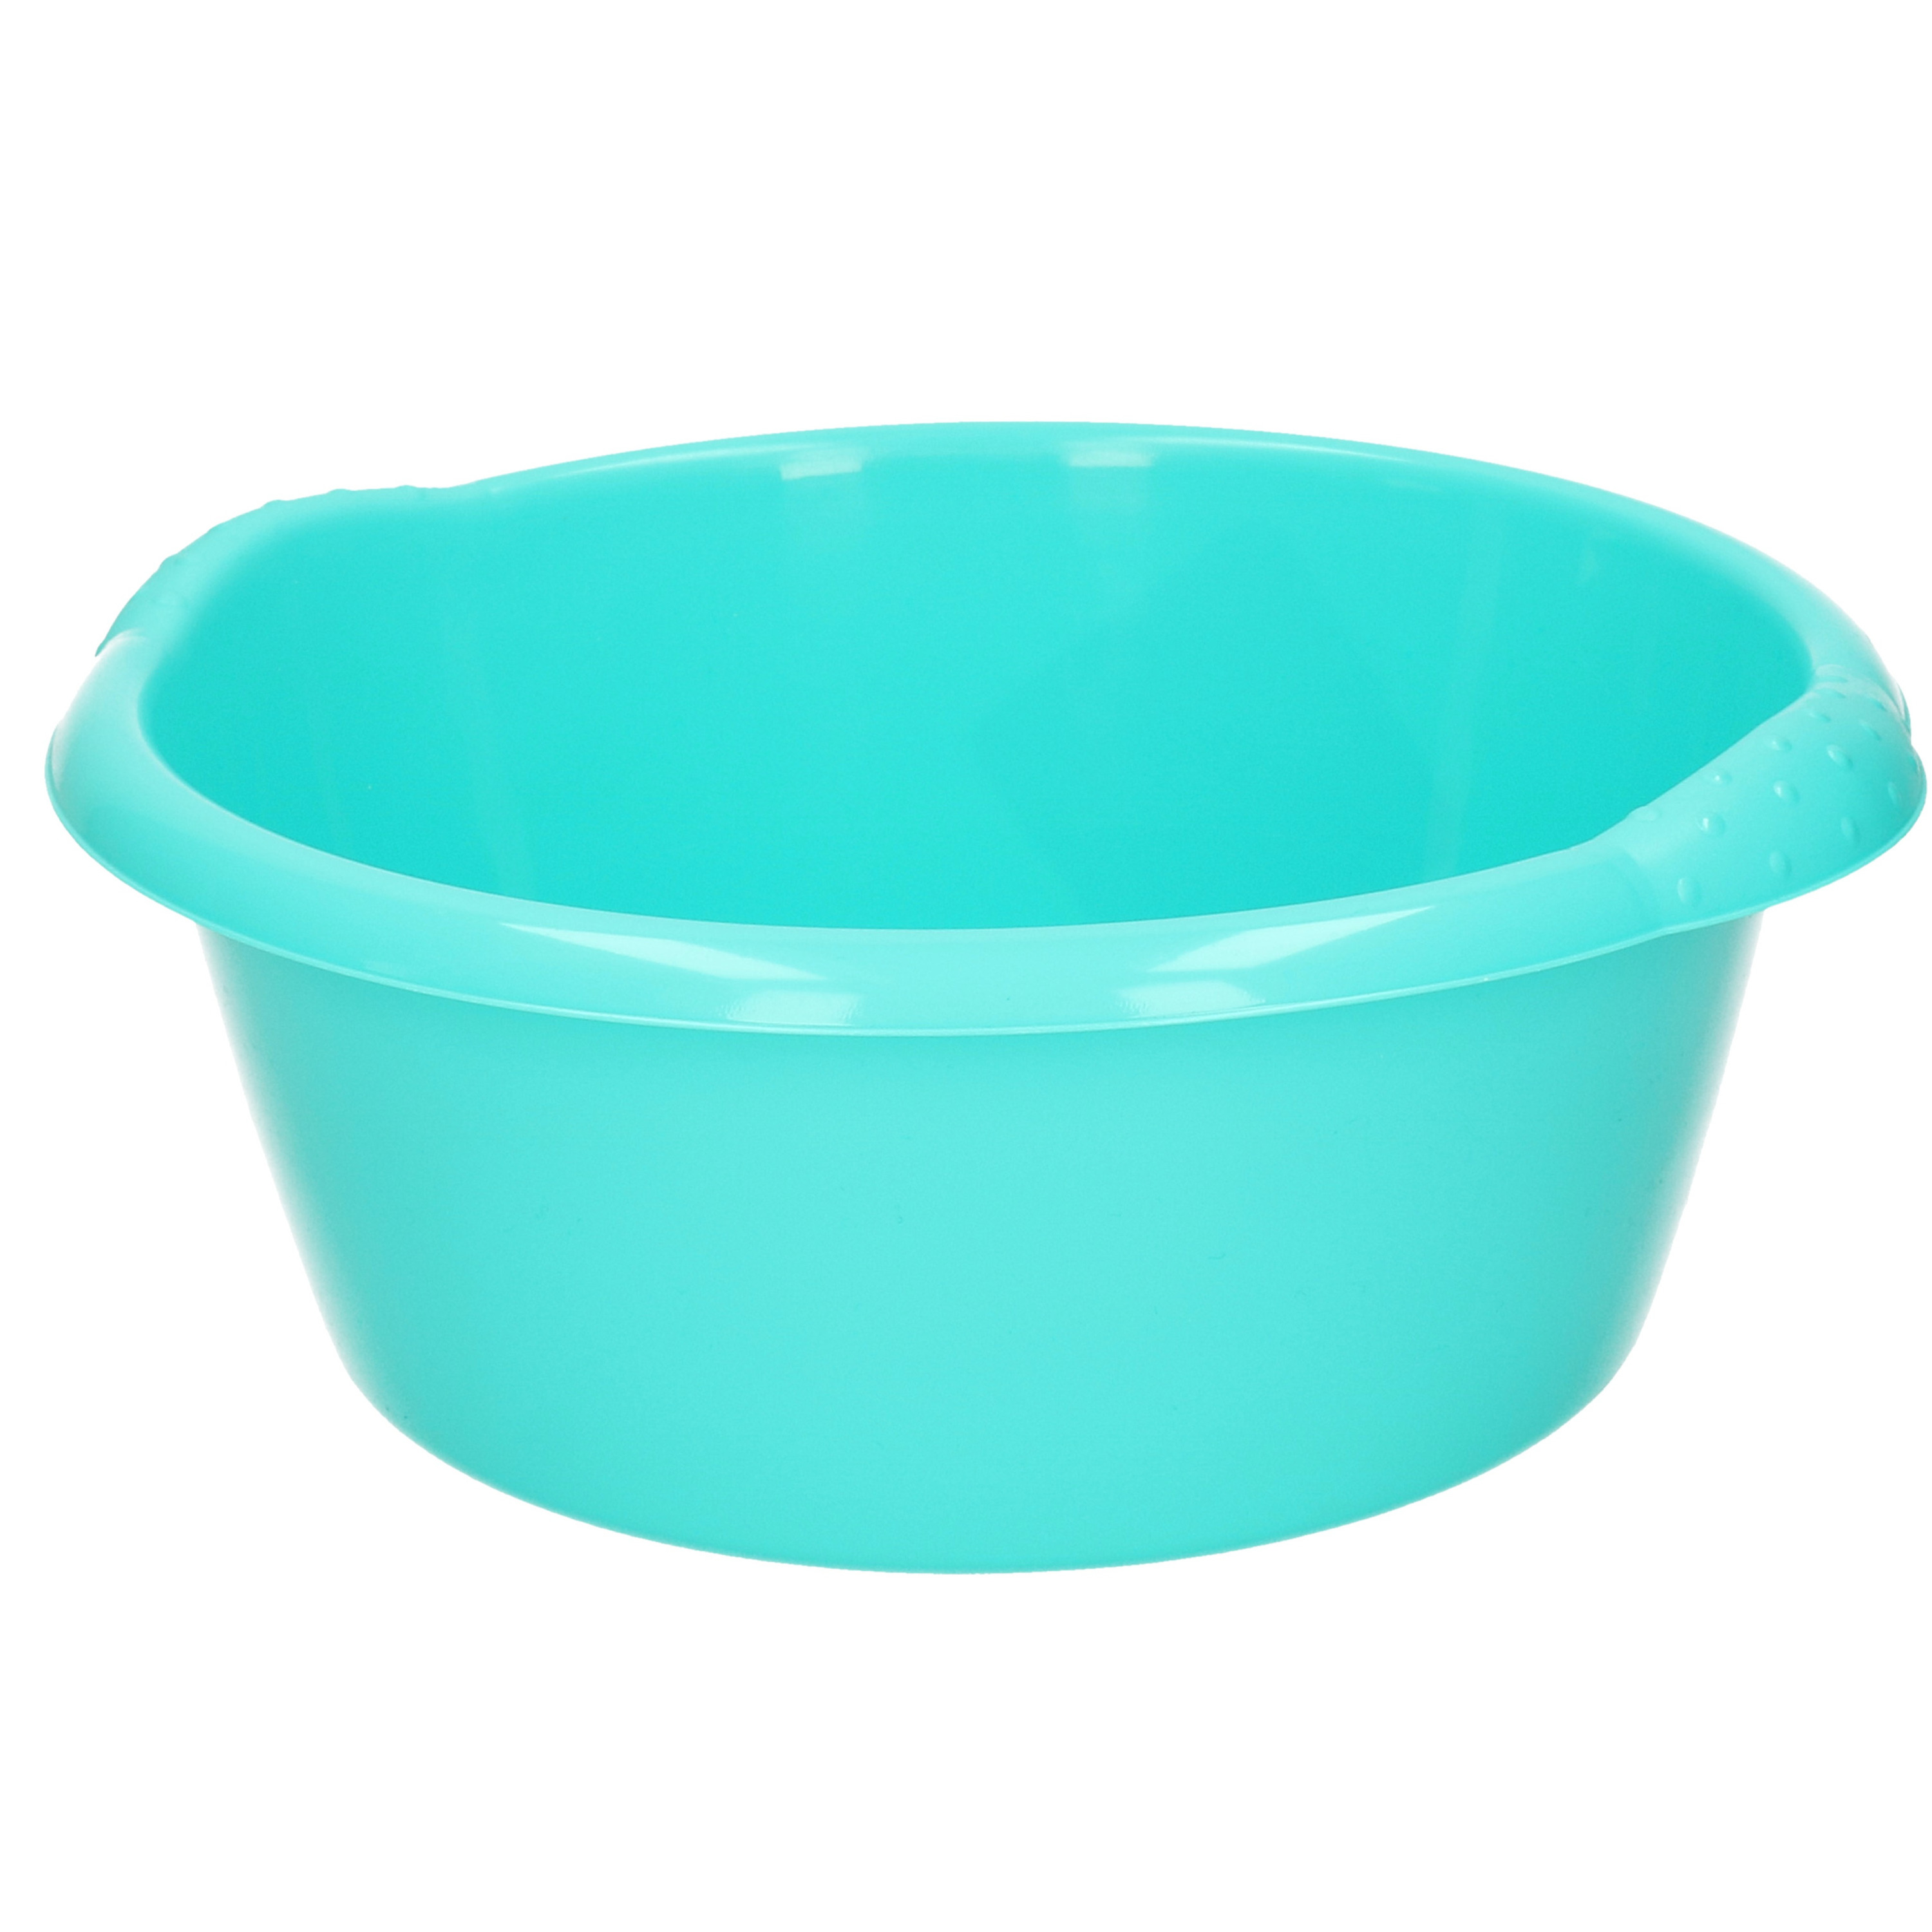 Rond afwasteiltje-emmertje turquoise blauw 3 liter 25 x 10,5 cm schoonmaakartikelen